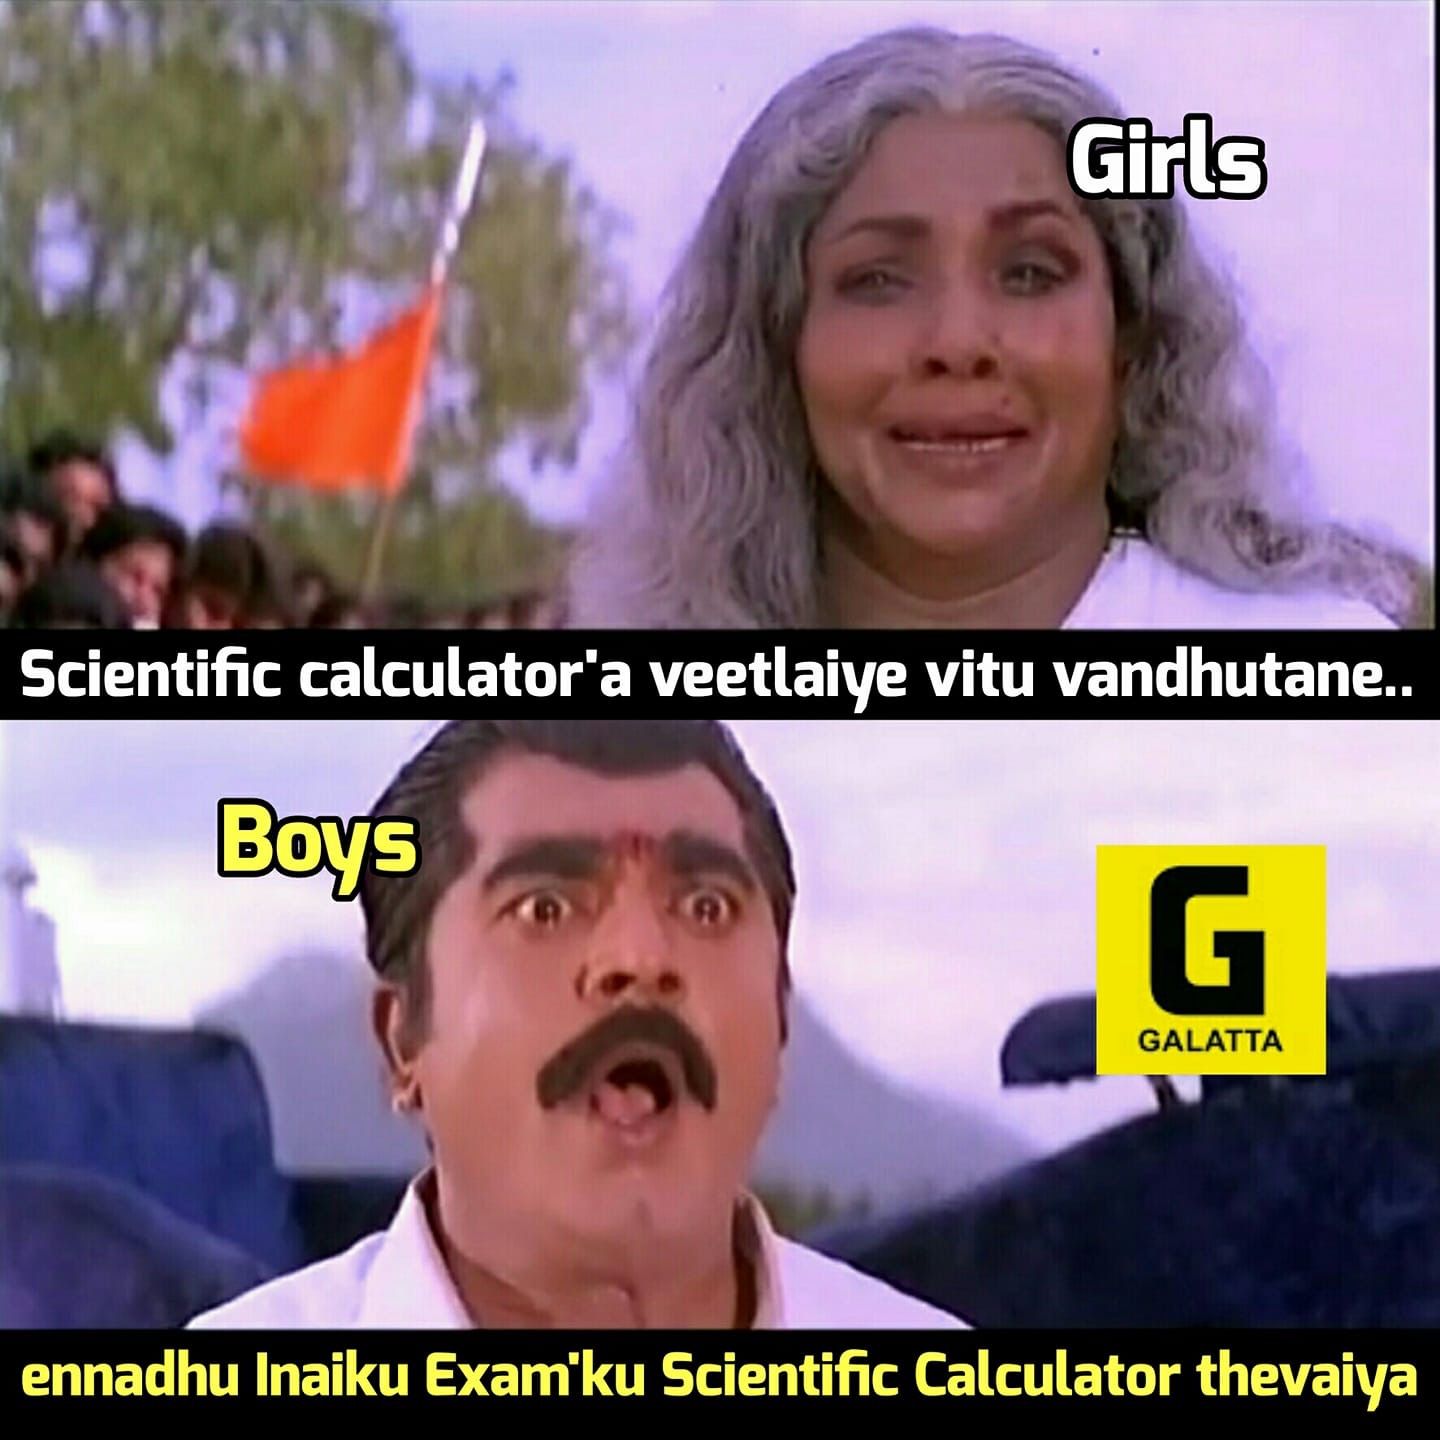 Tamil Whatsapp Jokes and Funny Photos